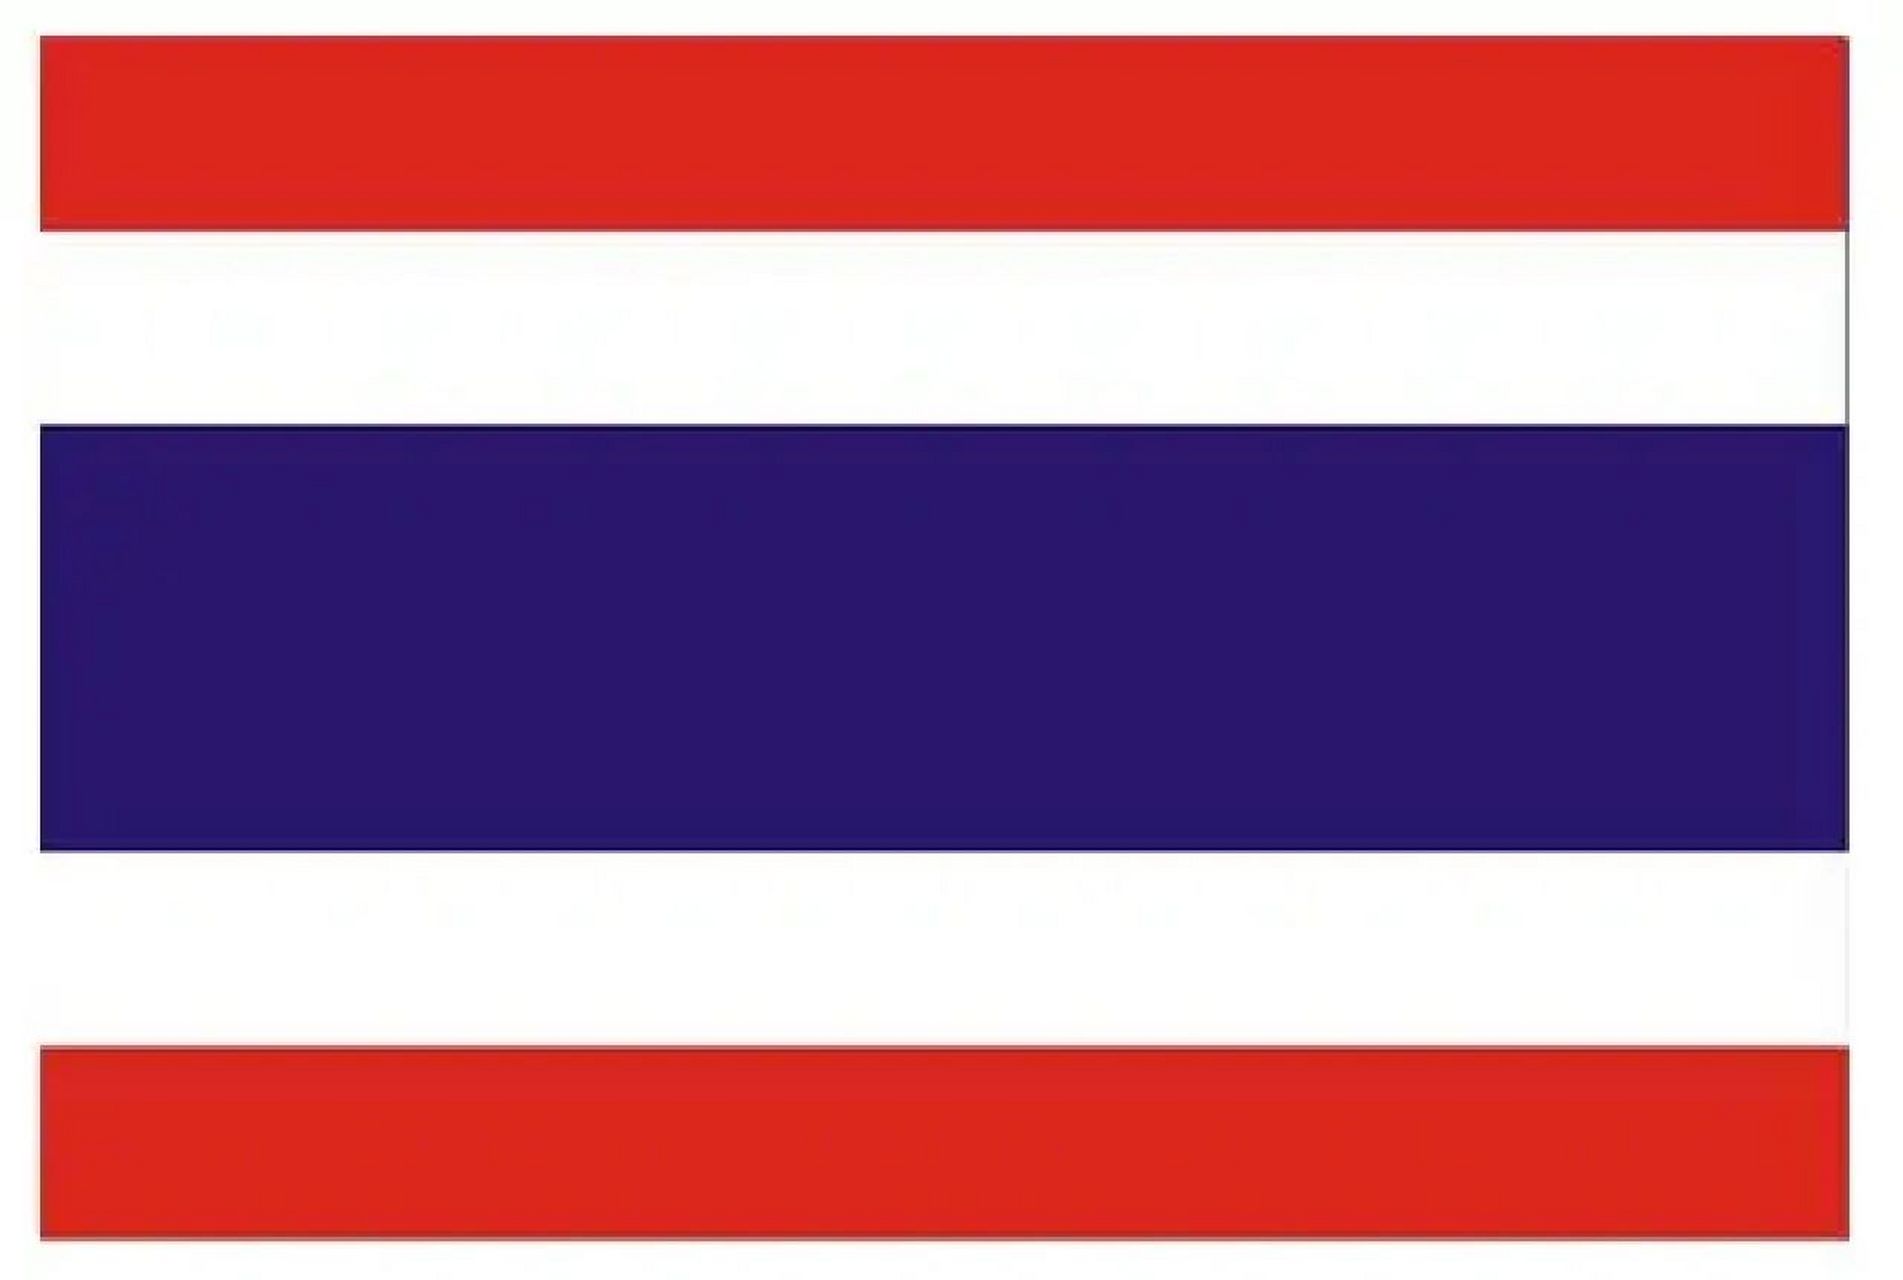 各国国旗意义@泰国 泰王国国旗,呈长方形,长与宽之比为3:2